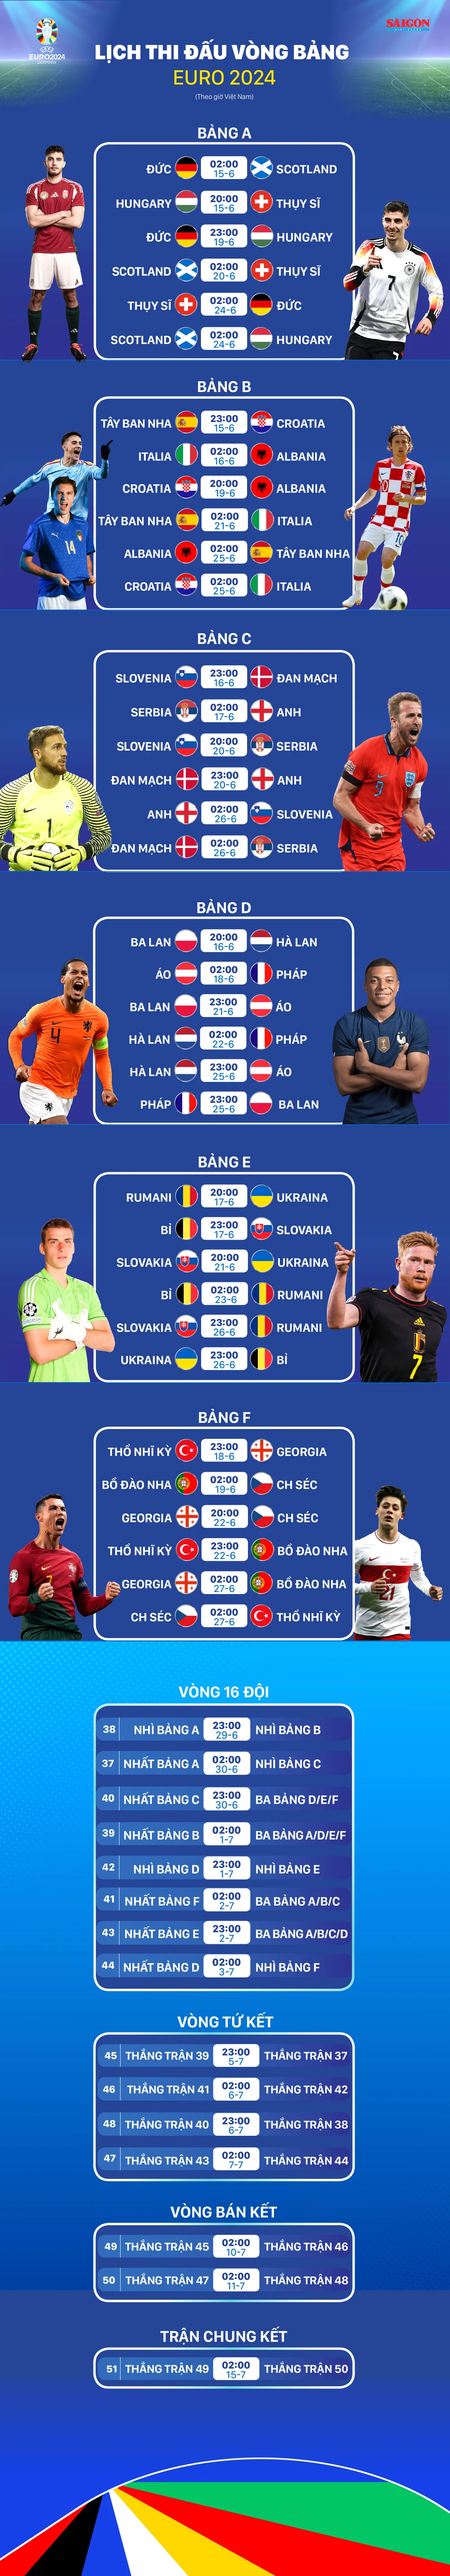 Lịch thi đấu vòng bảng EURO 2024 (Theo giờ Việt Nam)- Ảnh 1.